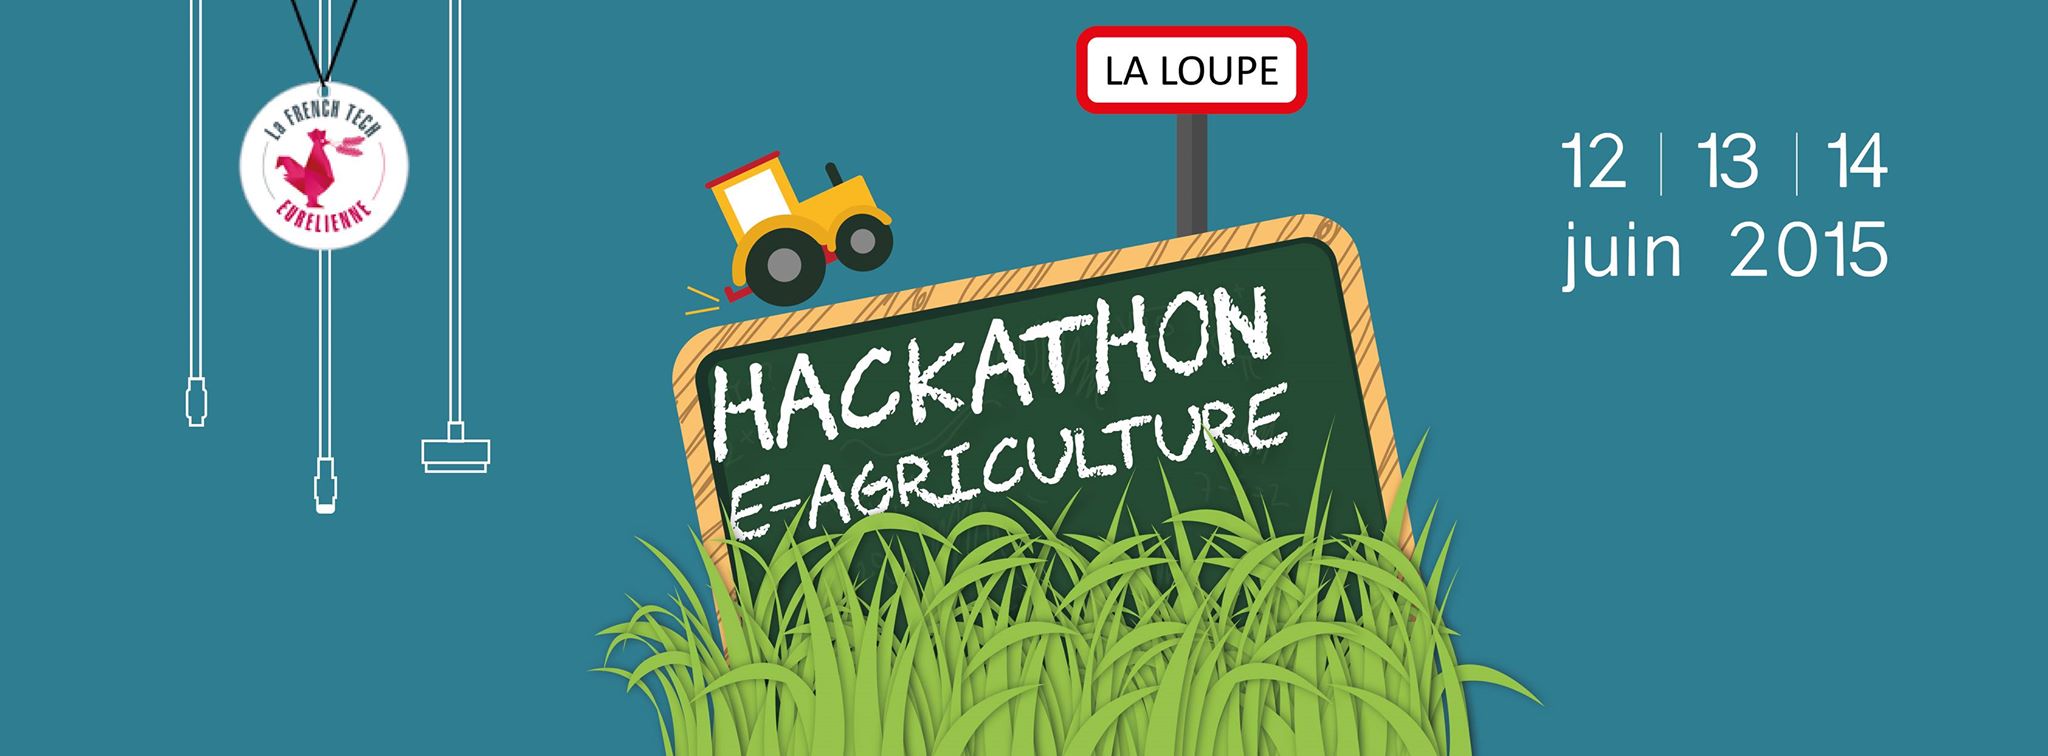 Hackathon agriculture